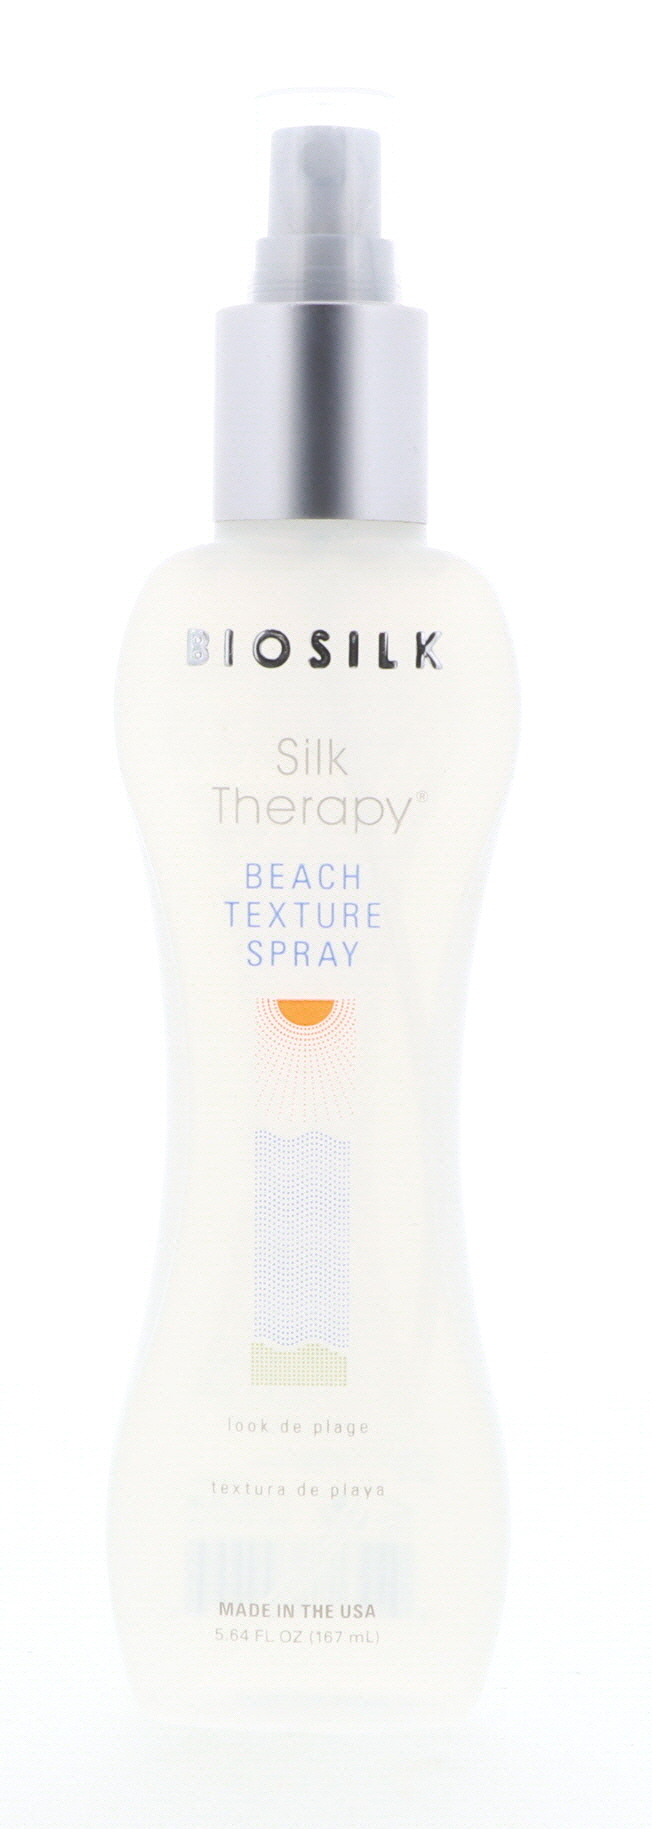 Biosilk Silk Therapy Beach Texture Spray, 5.64 oz | eBay